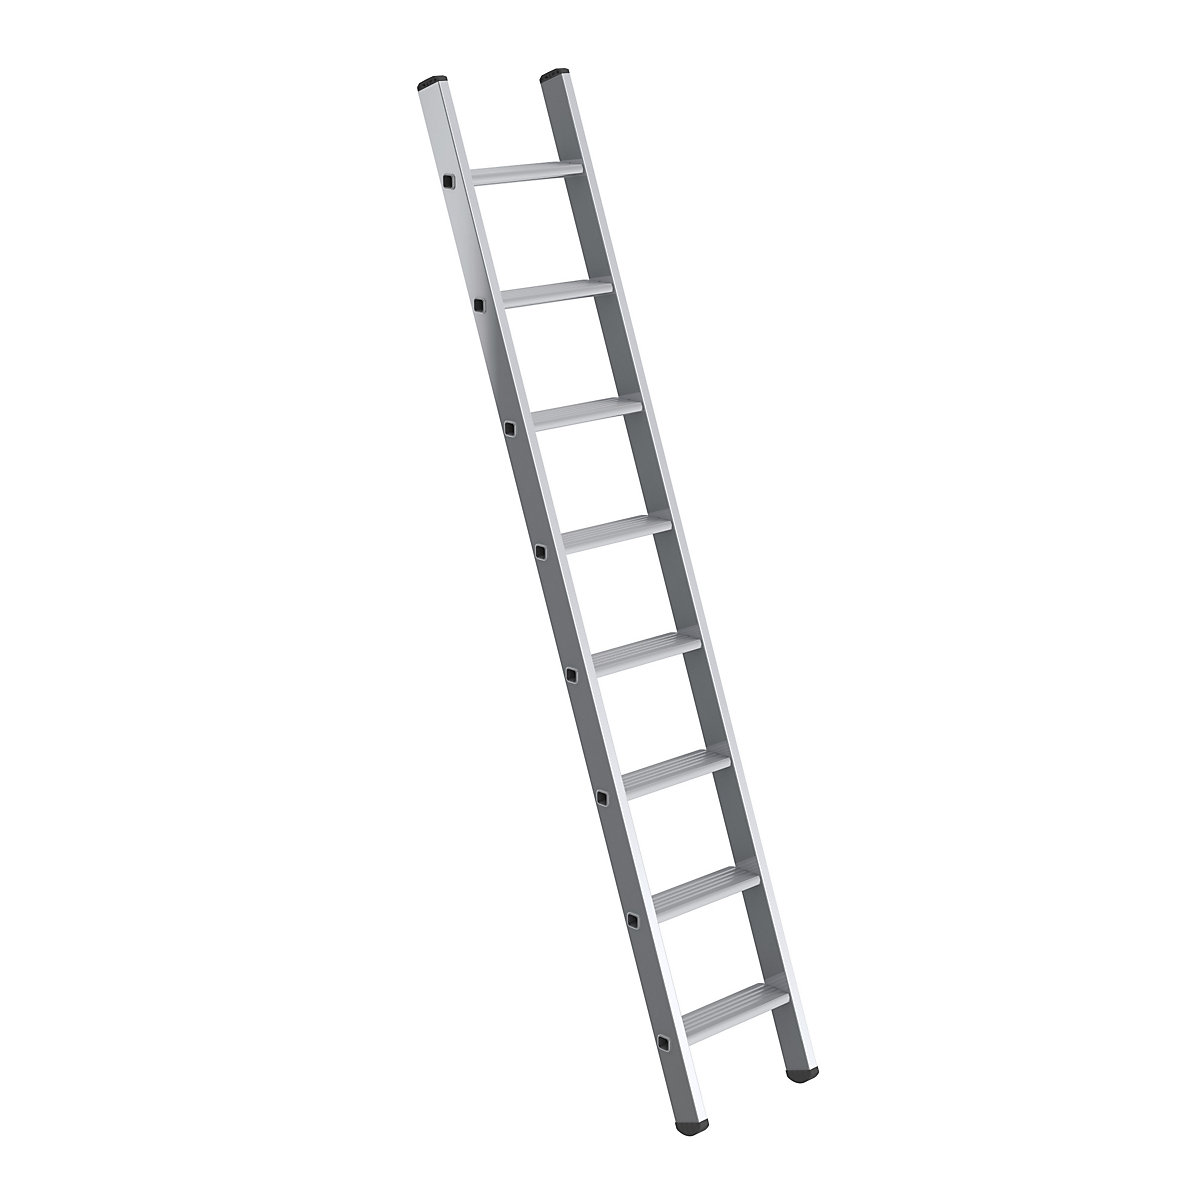 Prislonska lestev s stopnicami – MUNK, širina 350 mm, 8 stopnic, stranica 58 x 25 mm-7